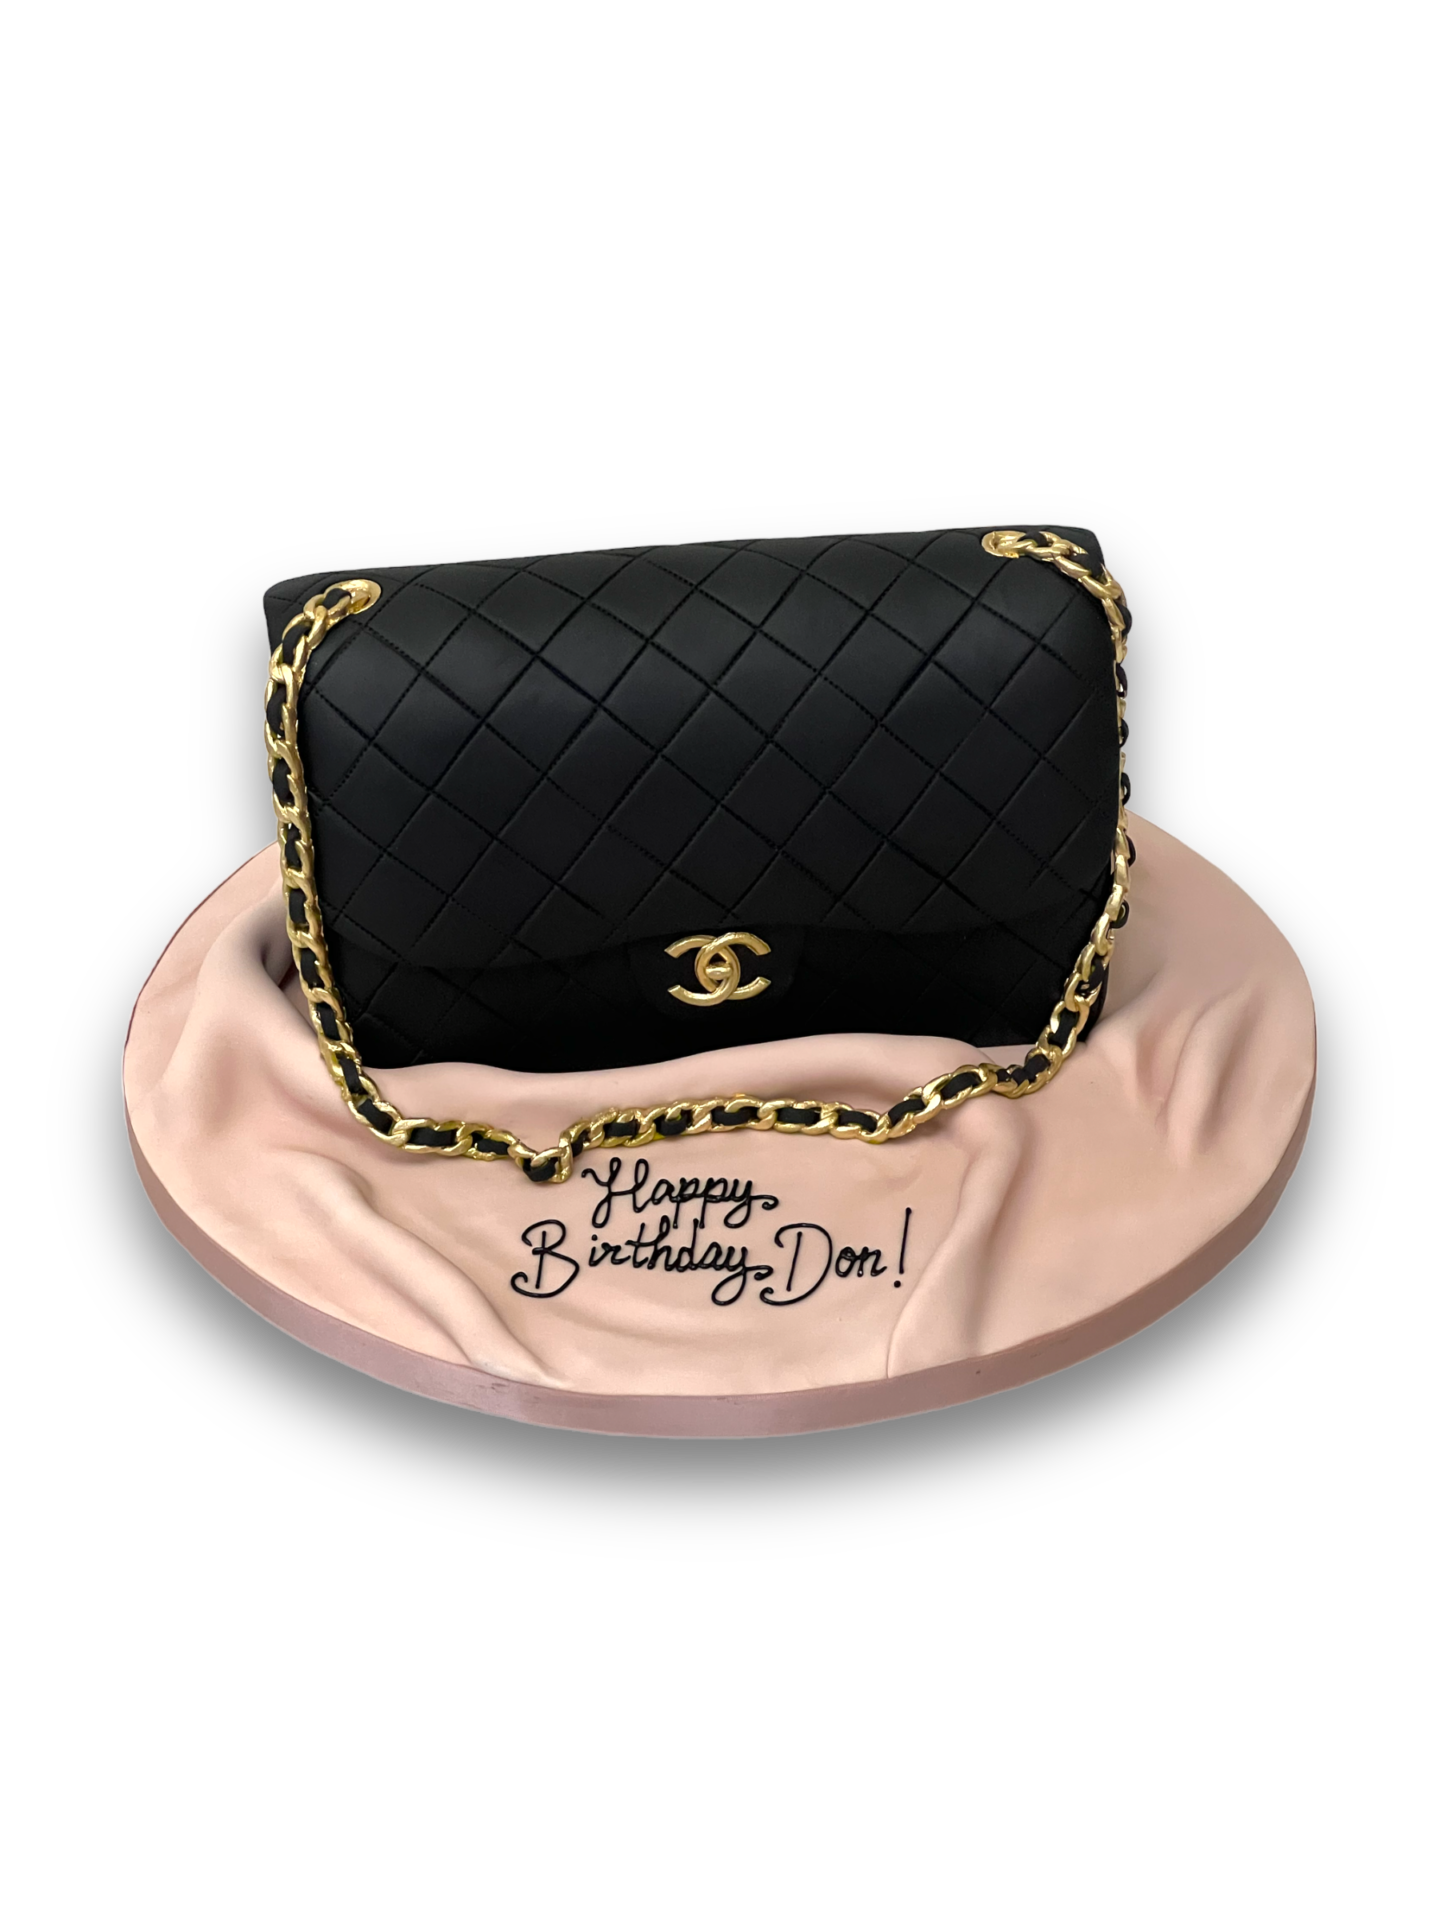 Handbag Cake With Edible Fondant Shoes And Fondant Makeup